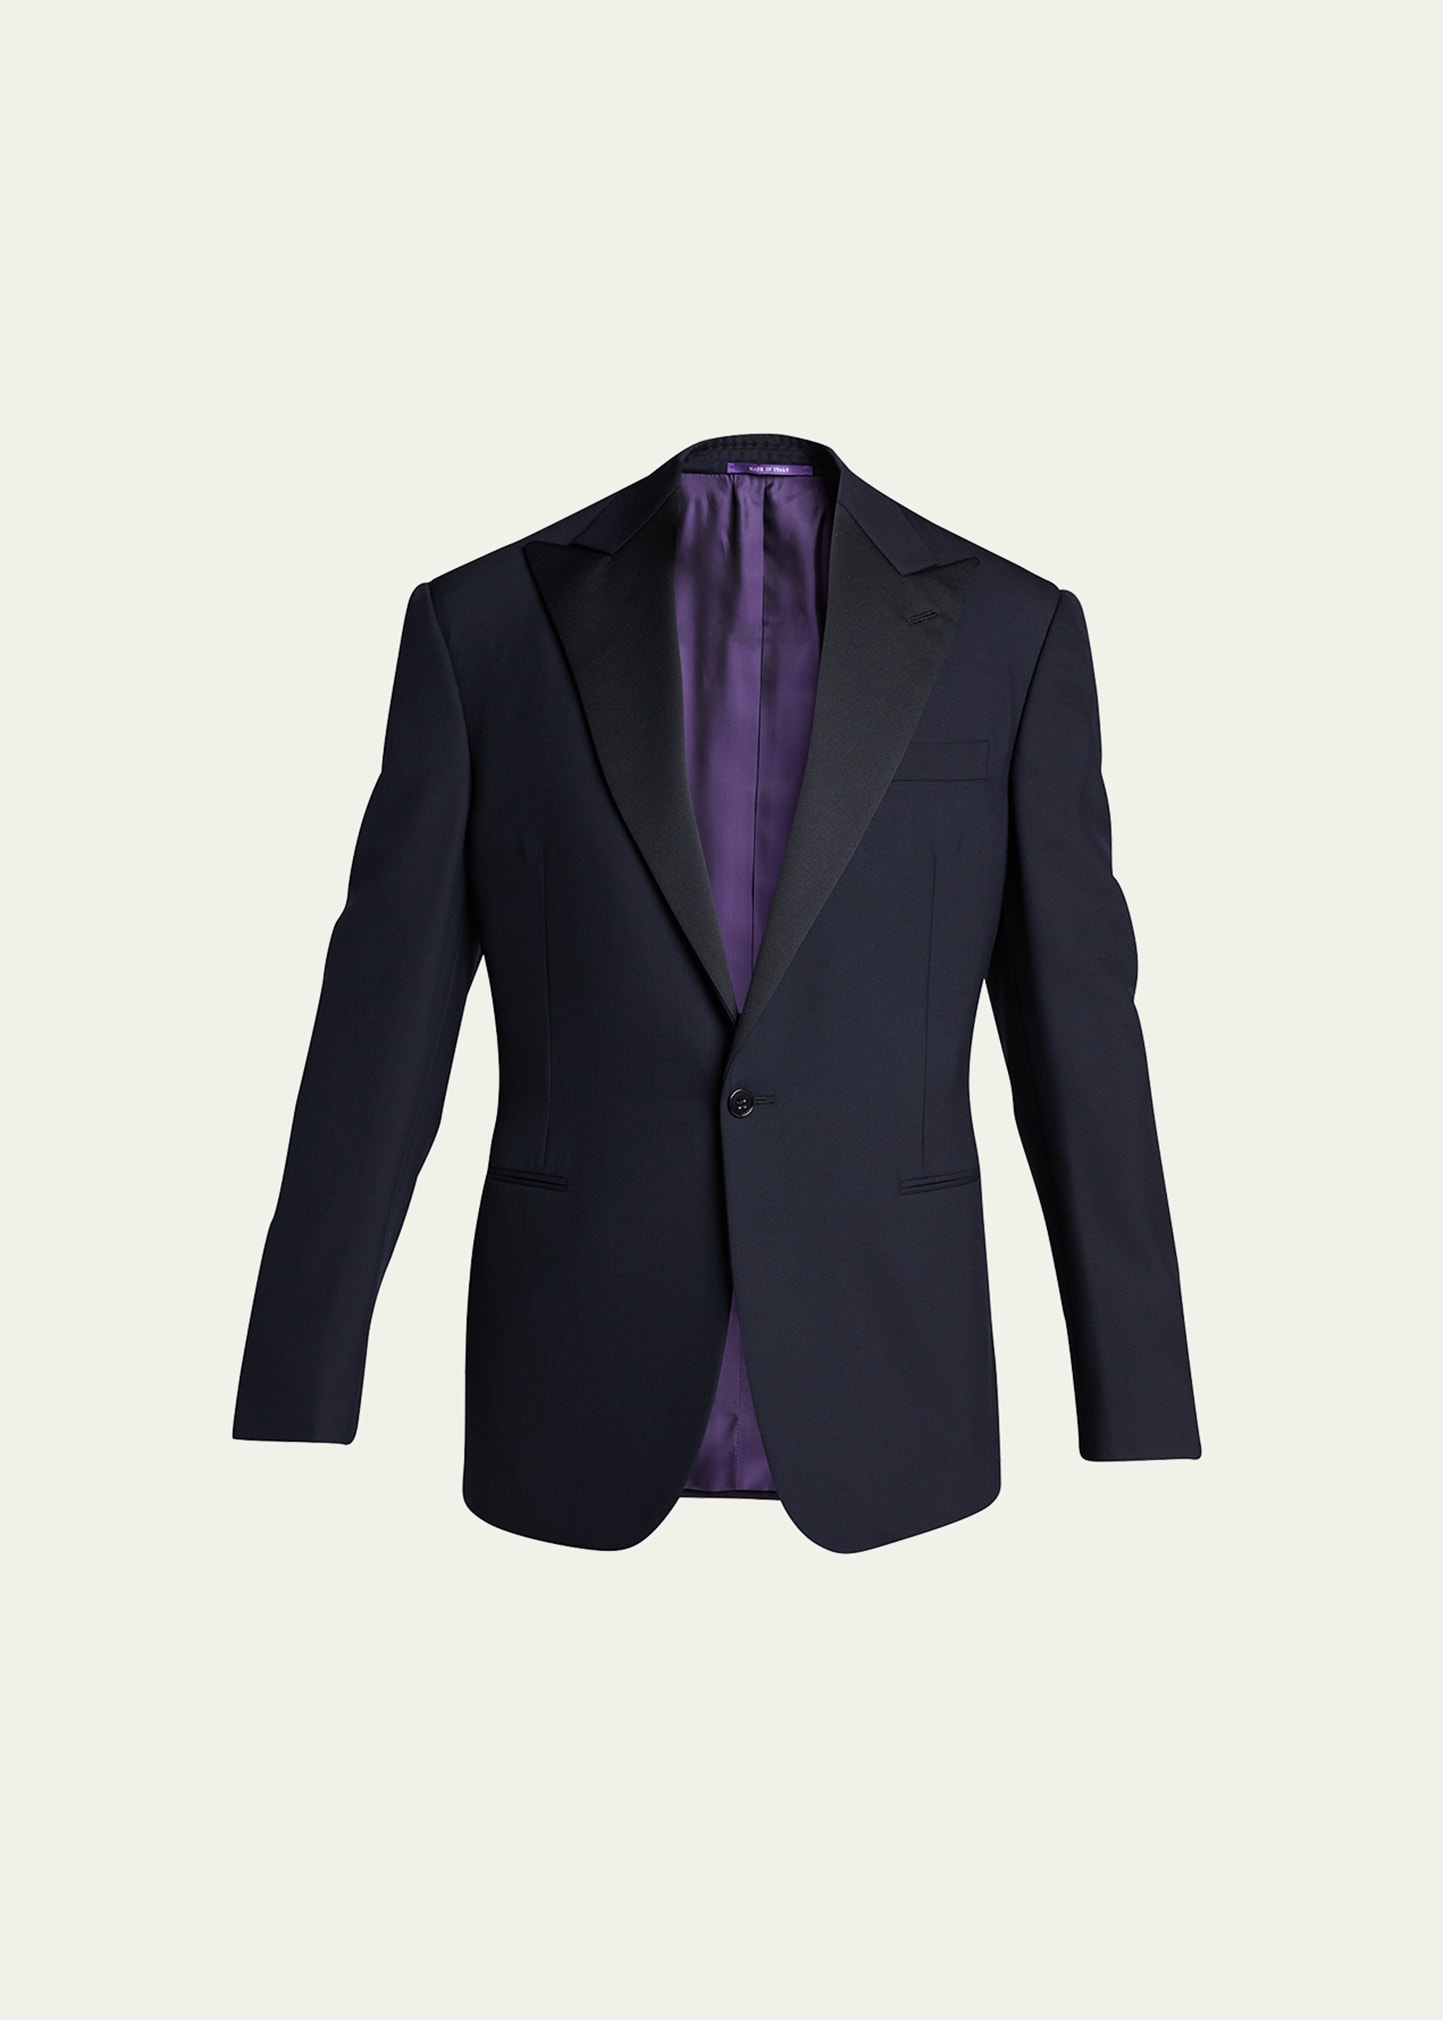 Ralph Lauren Purple Label Men's Barathea Solid Wool Tuxedo In Navy